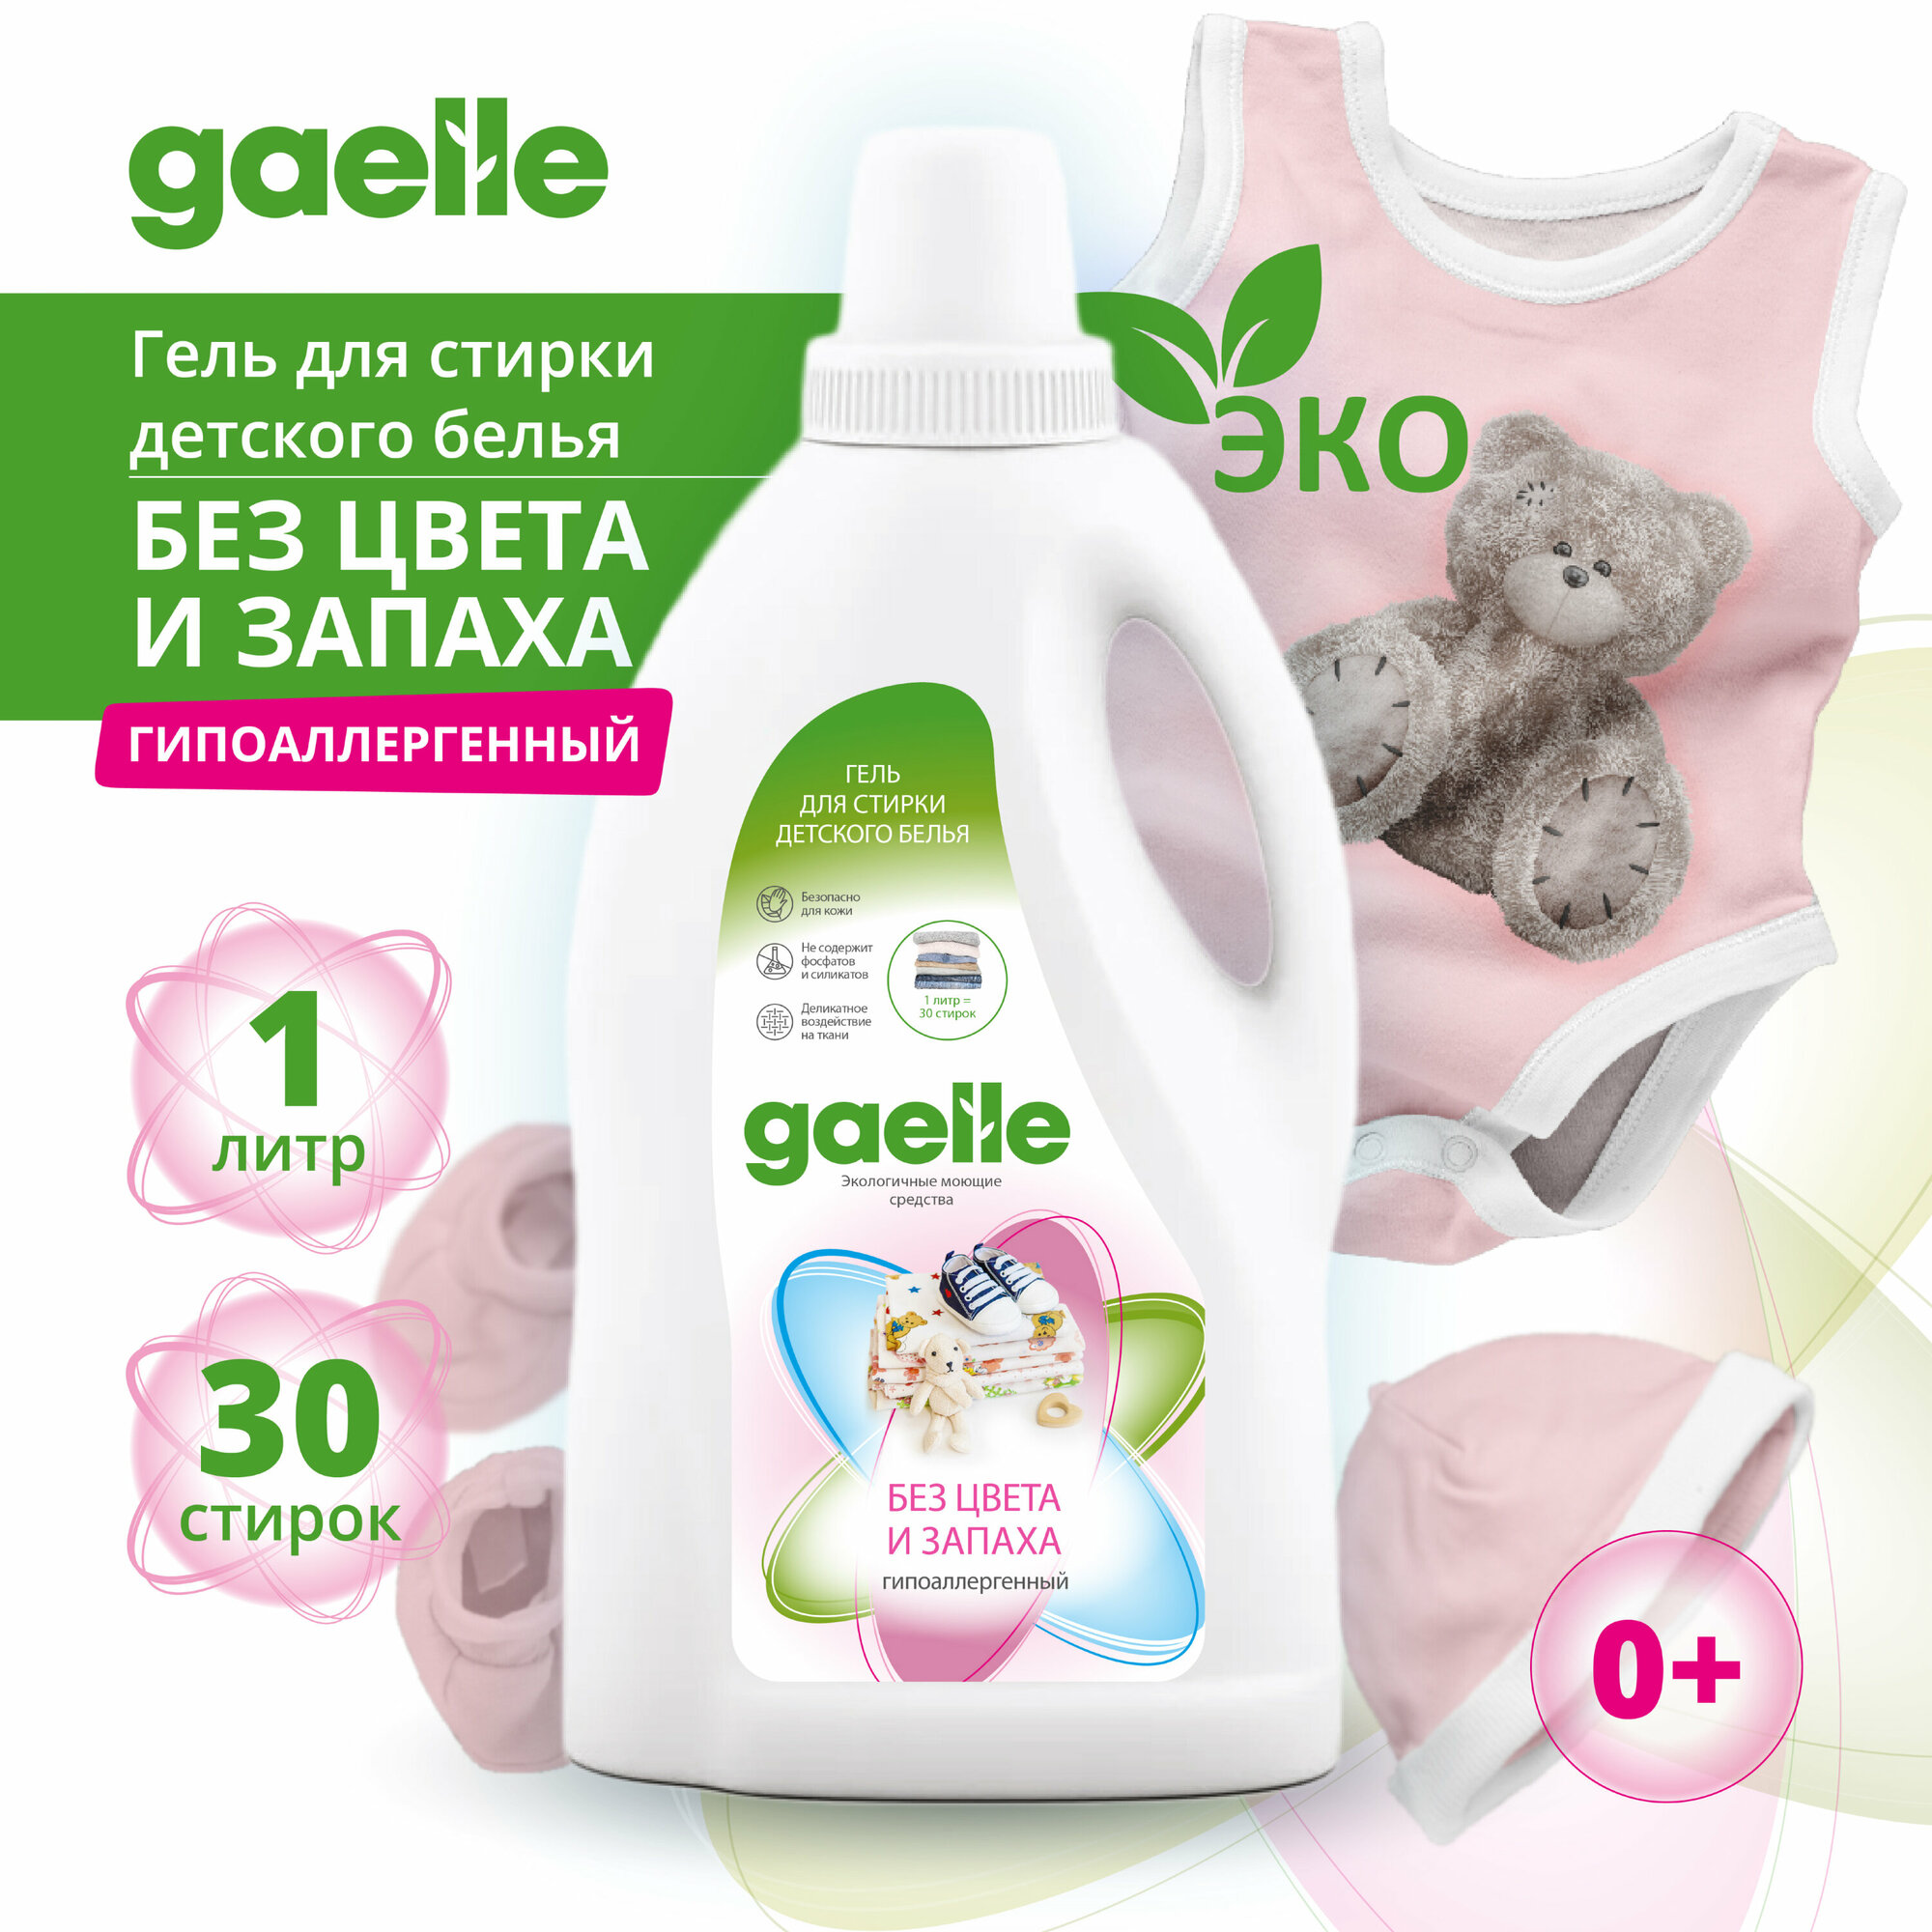 Гель для стирки детской одежды Gaelle 1 л. гипоаллергенный, без запаха, эко средство, жидкий порошок.